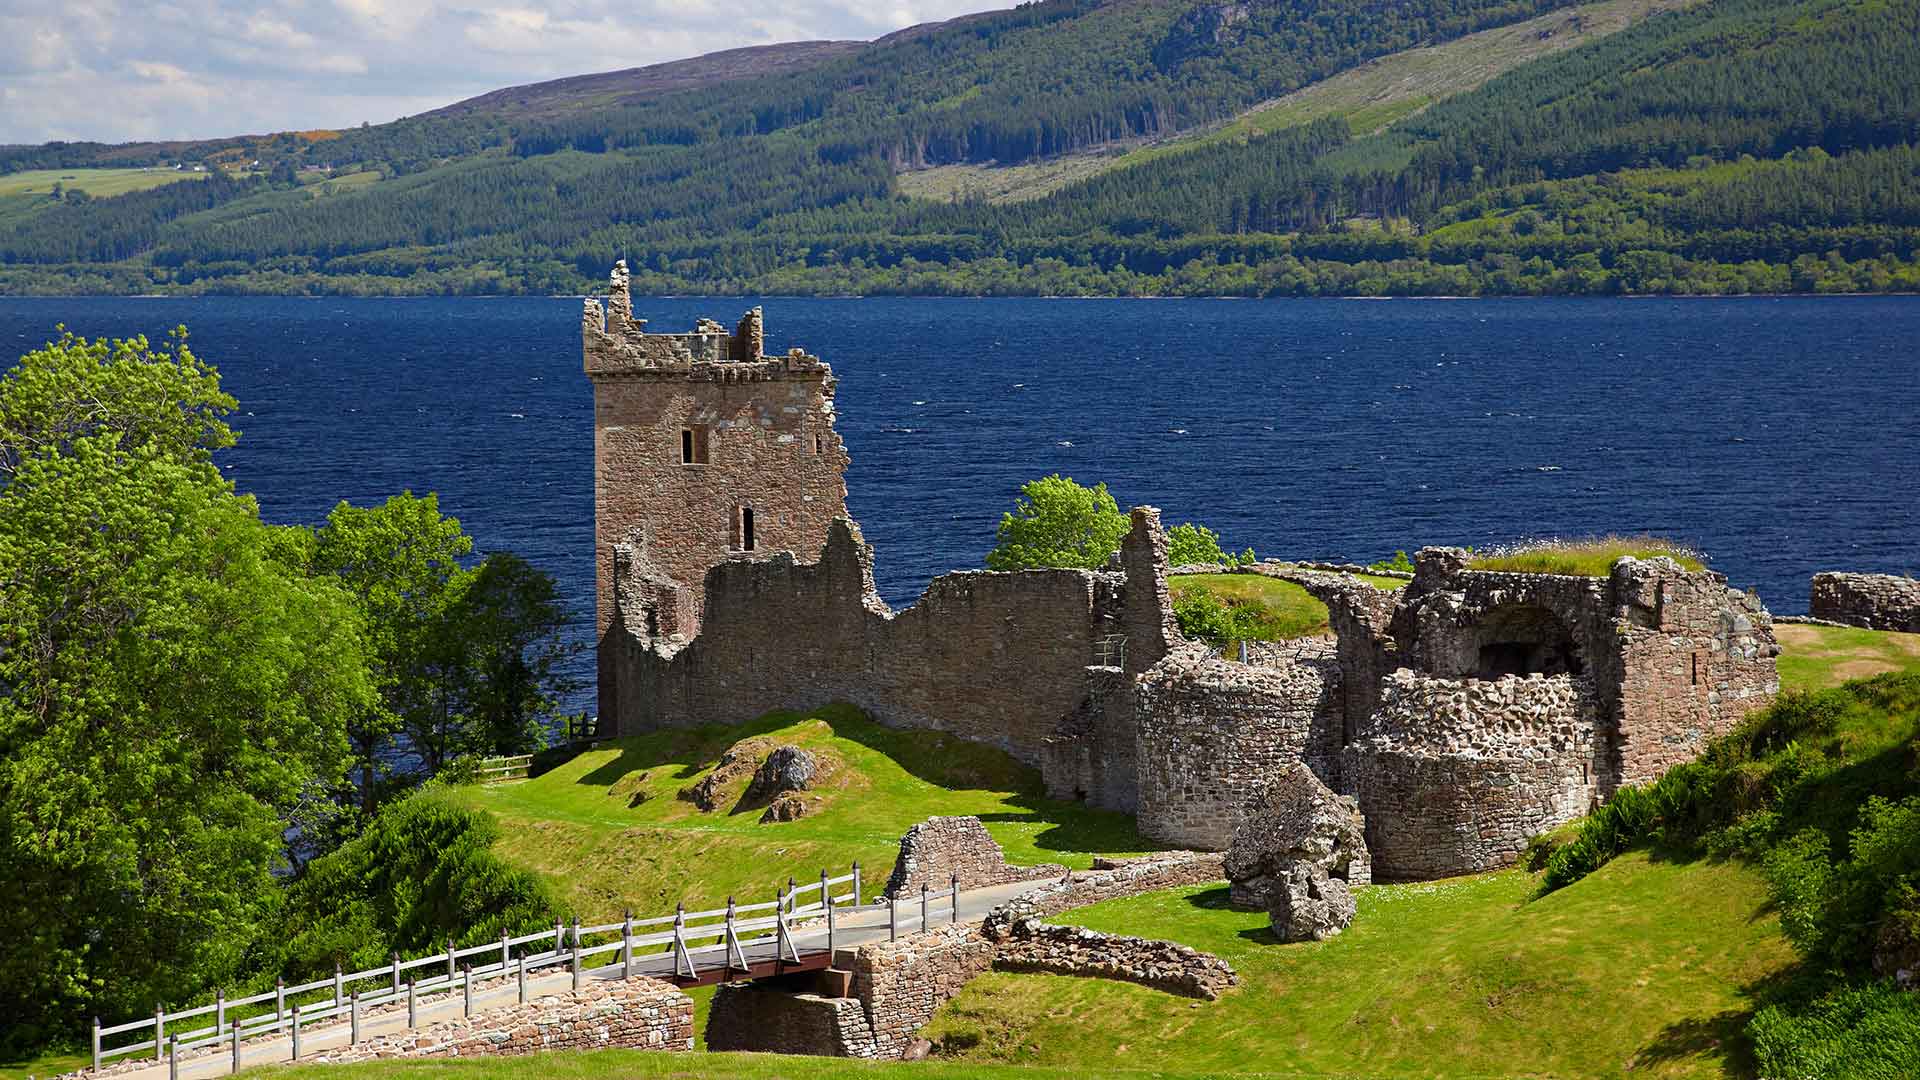 urquhart castle by loch ness